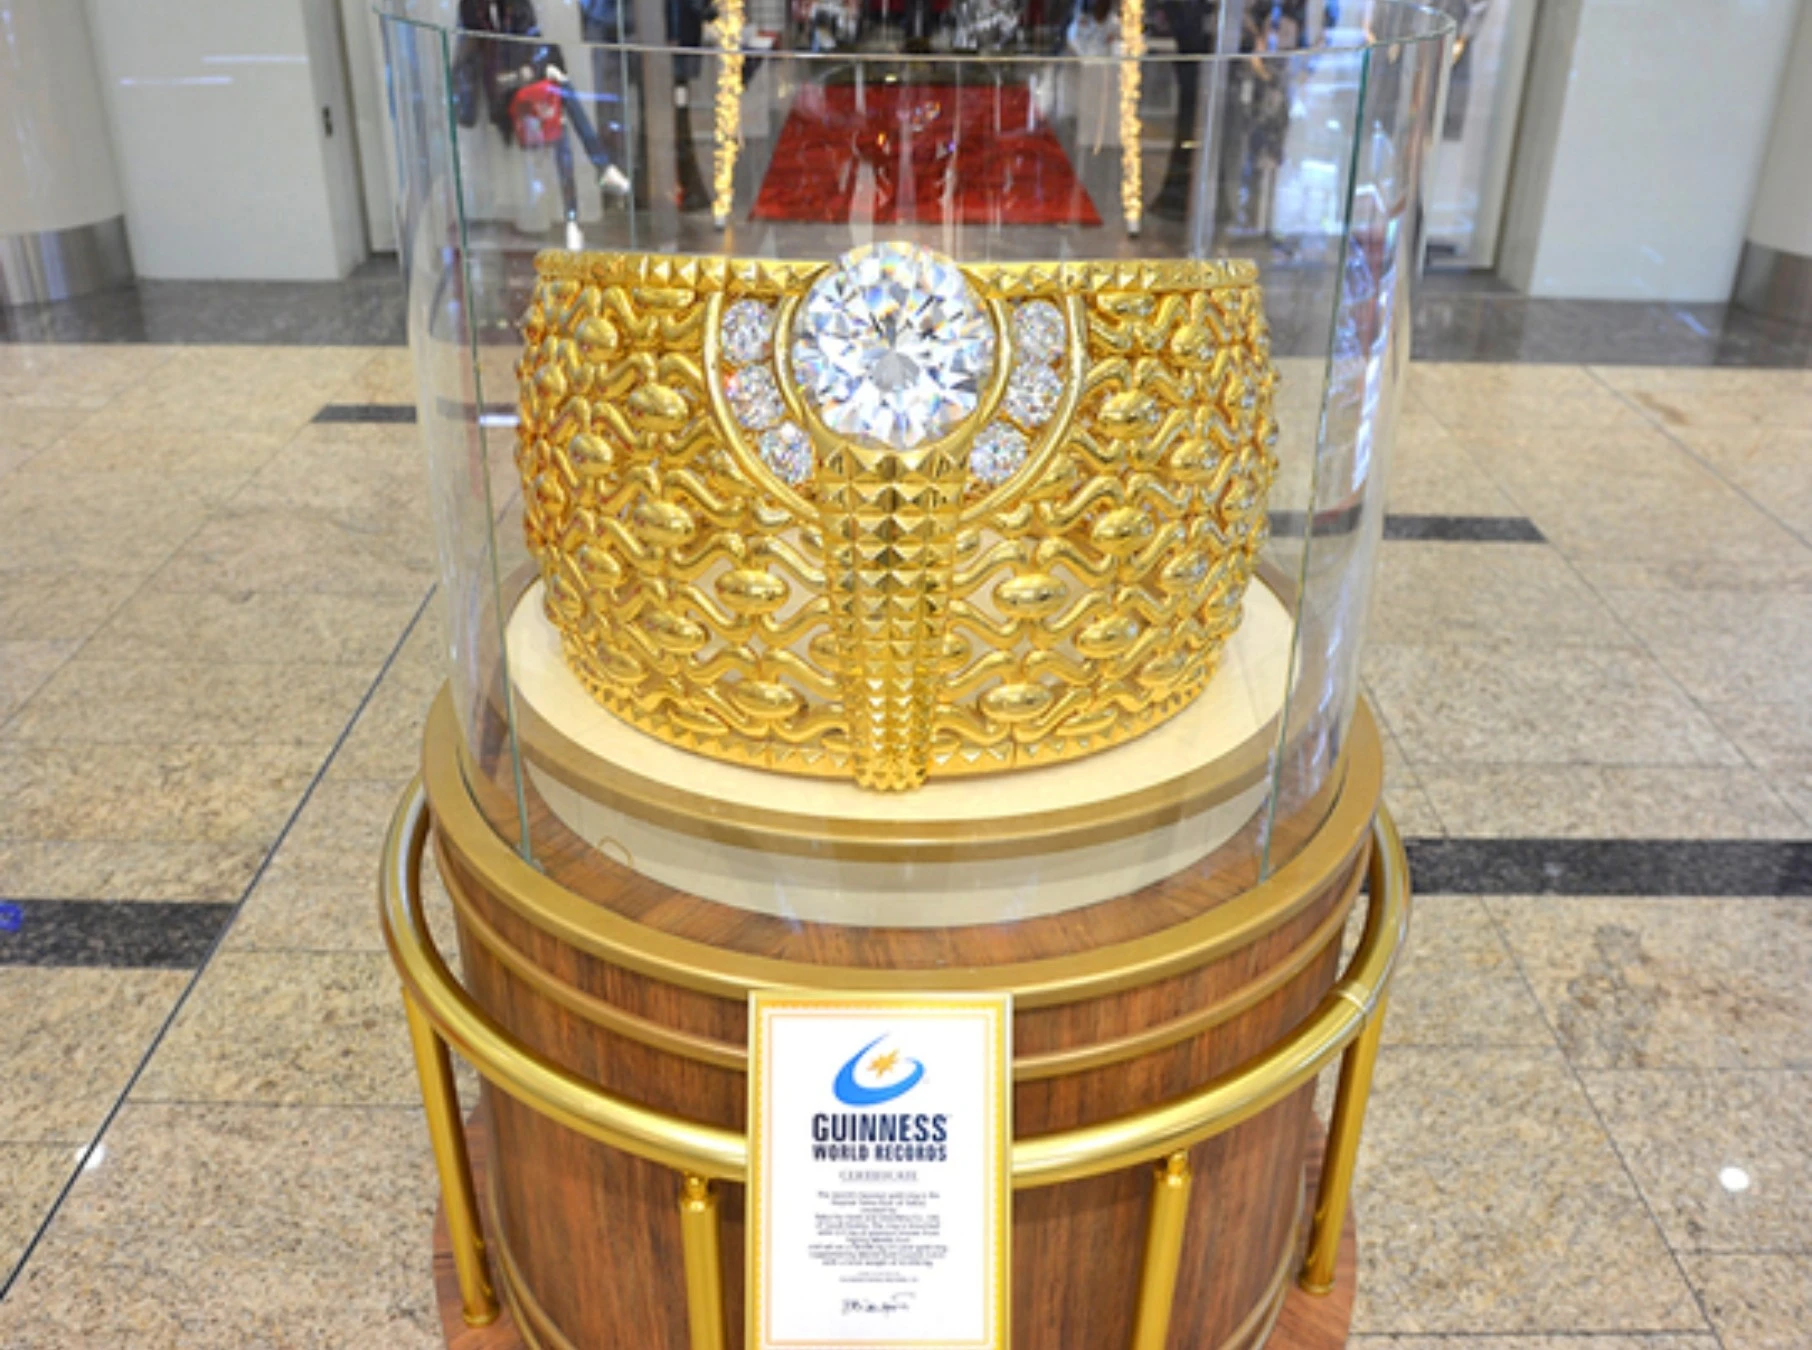 Khám phá chợ vàng lớn nhất thế giới, nơi lúc nào cũng có 10 tấn vàng